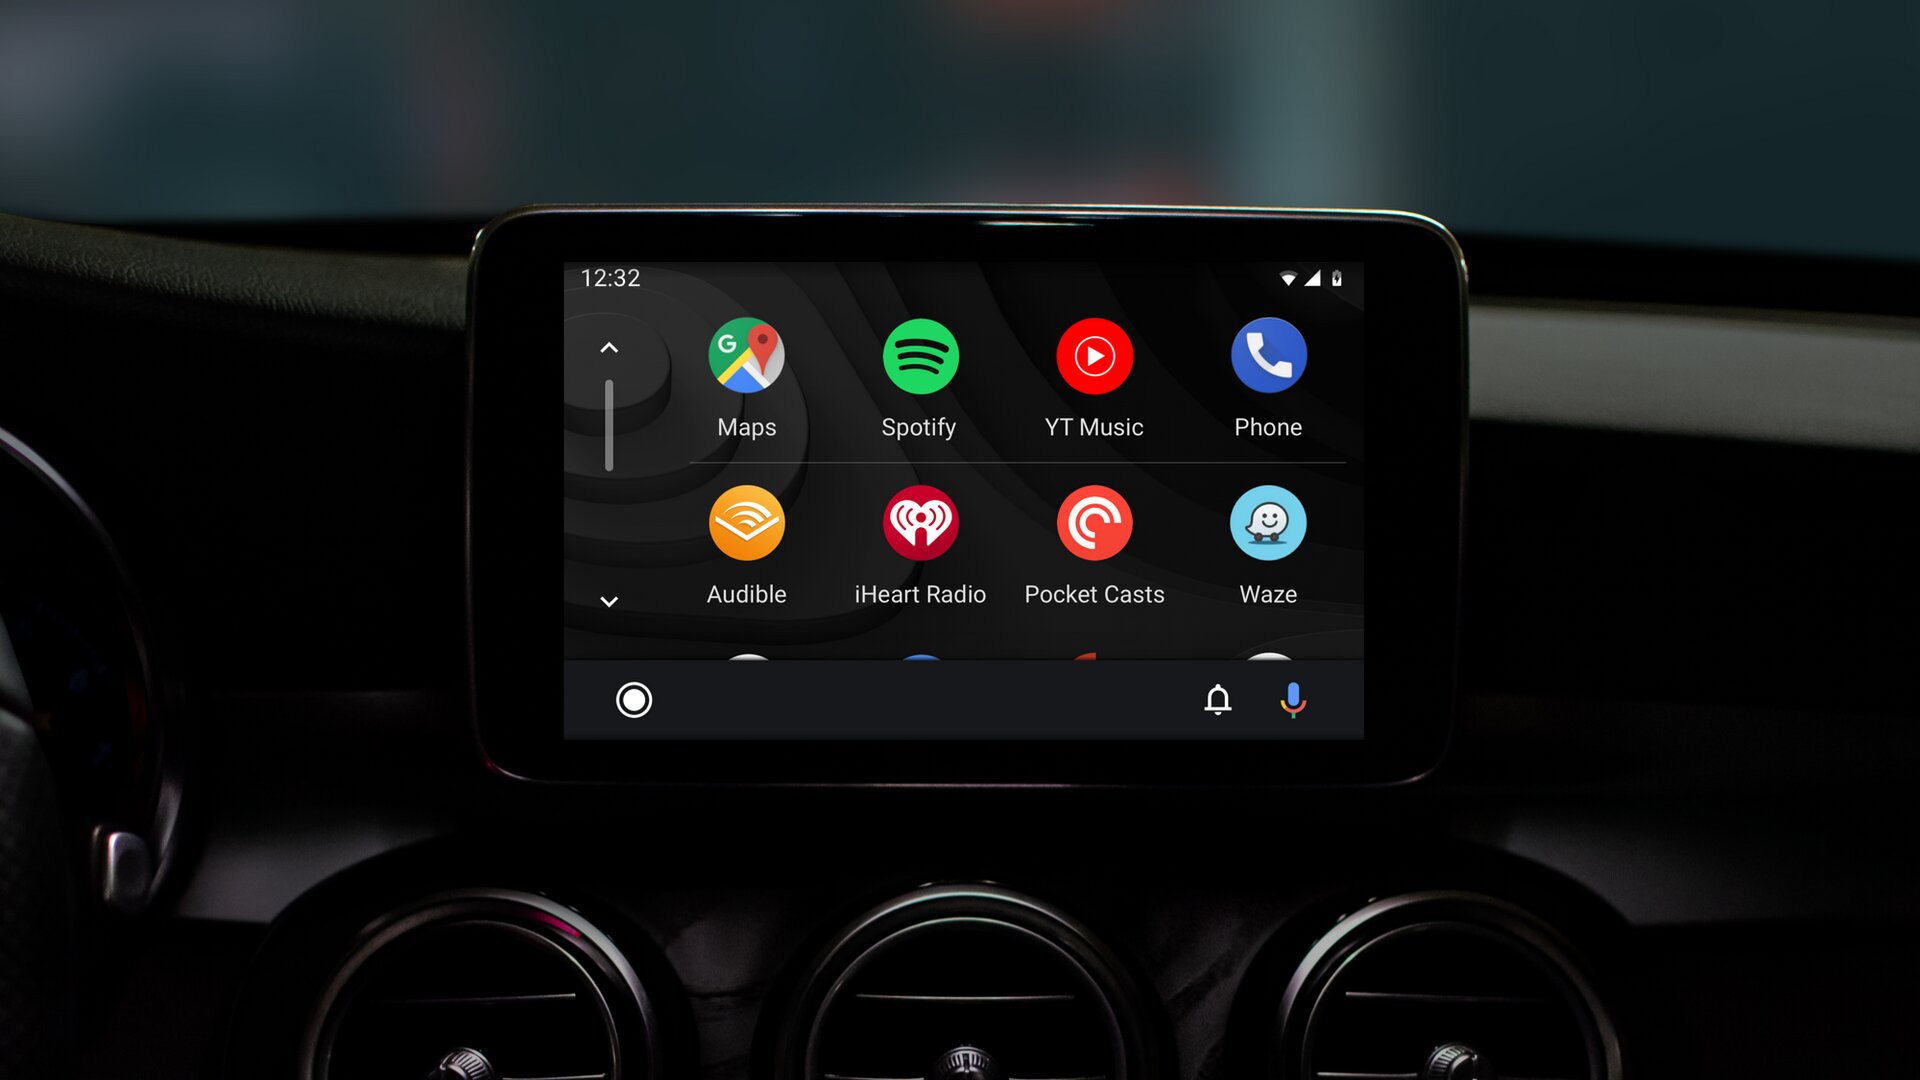 Neuer Launcher für Android Auto